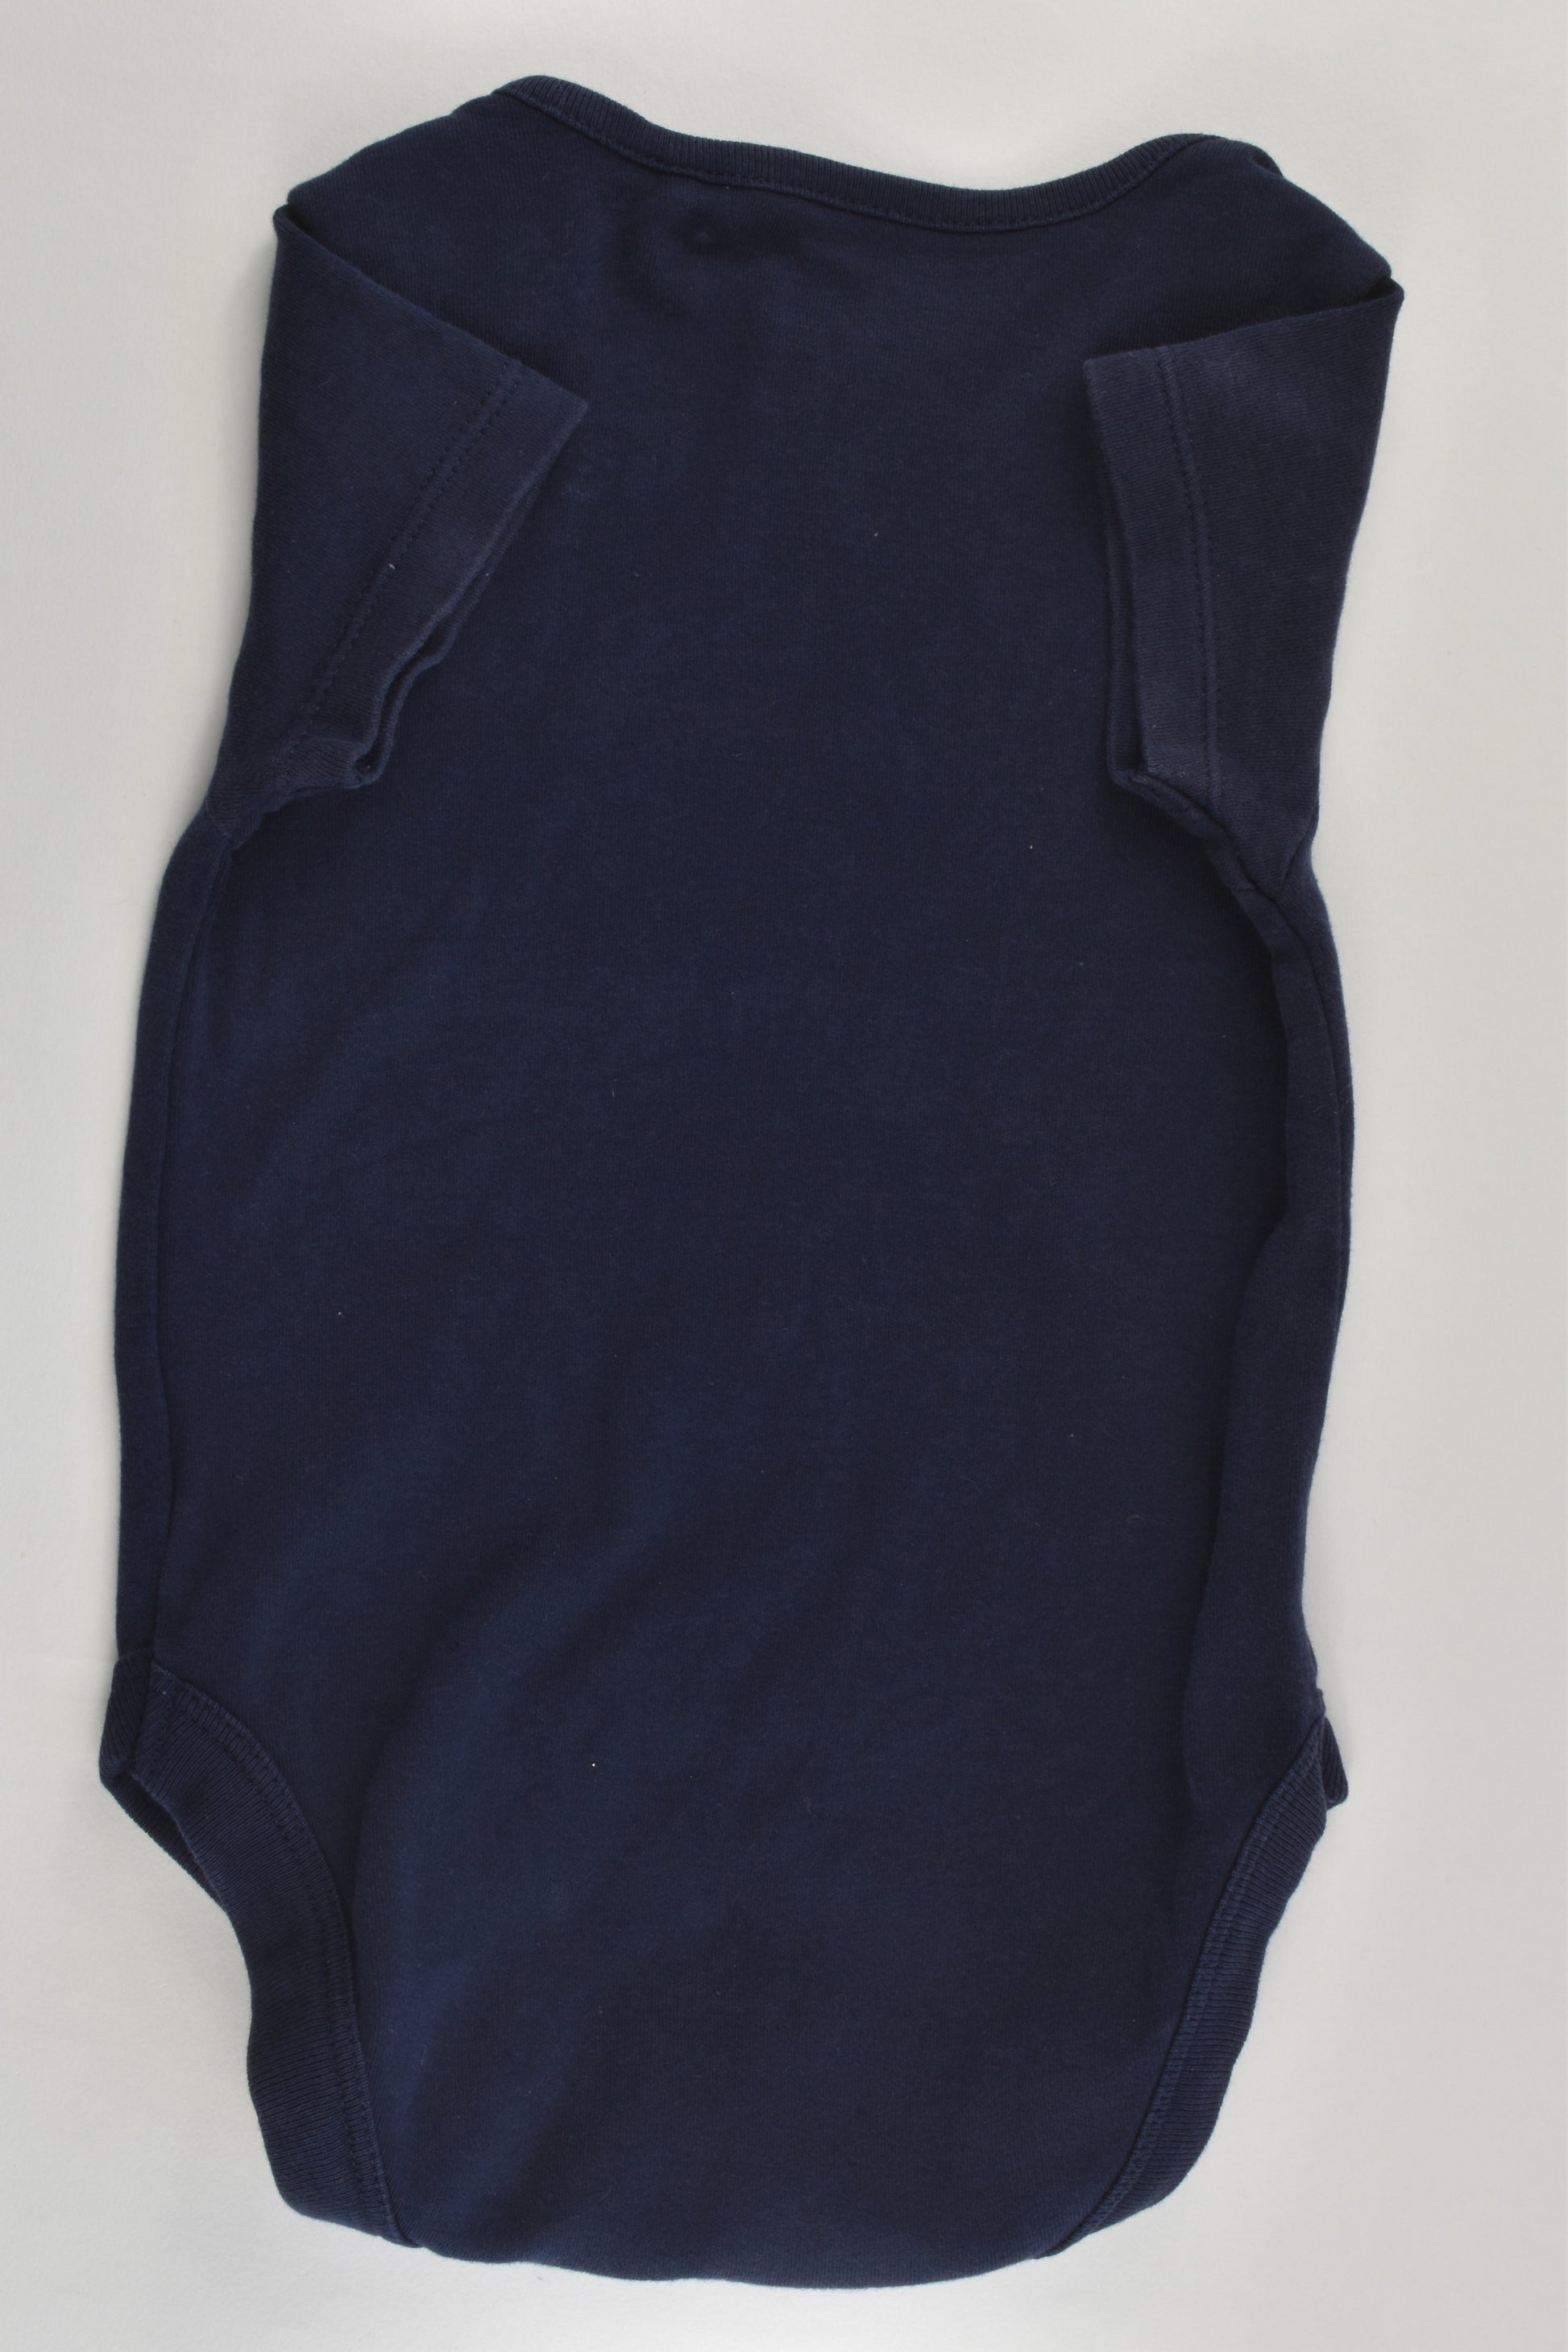 Next (UK) Size 00 (3-6 months) 'Beep! Beep!' Bodysuit